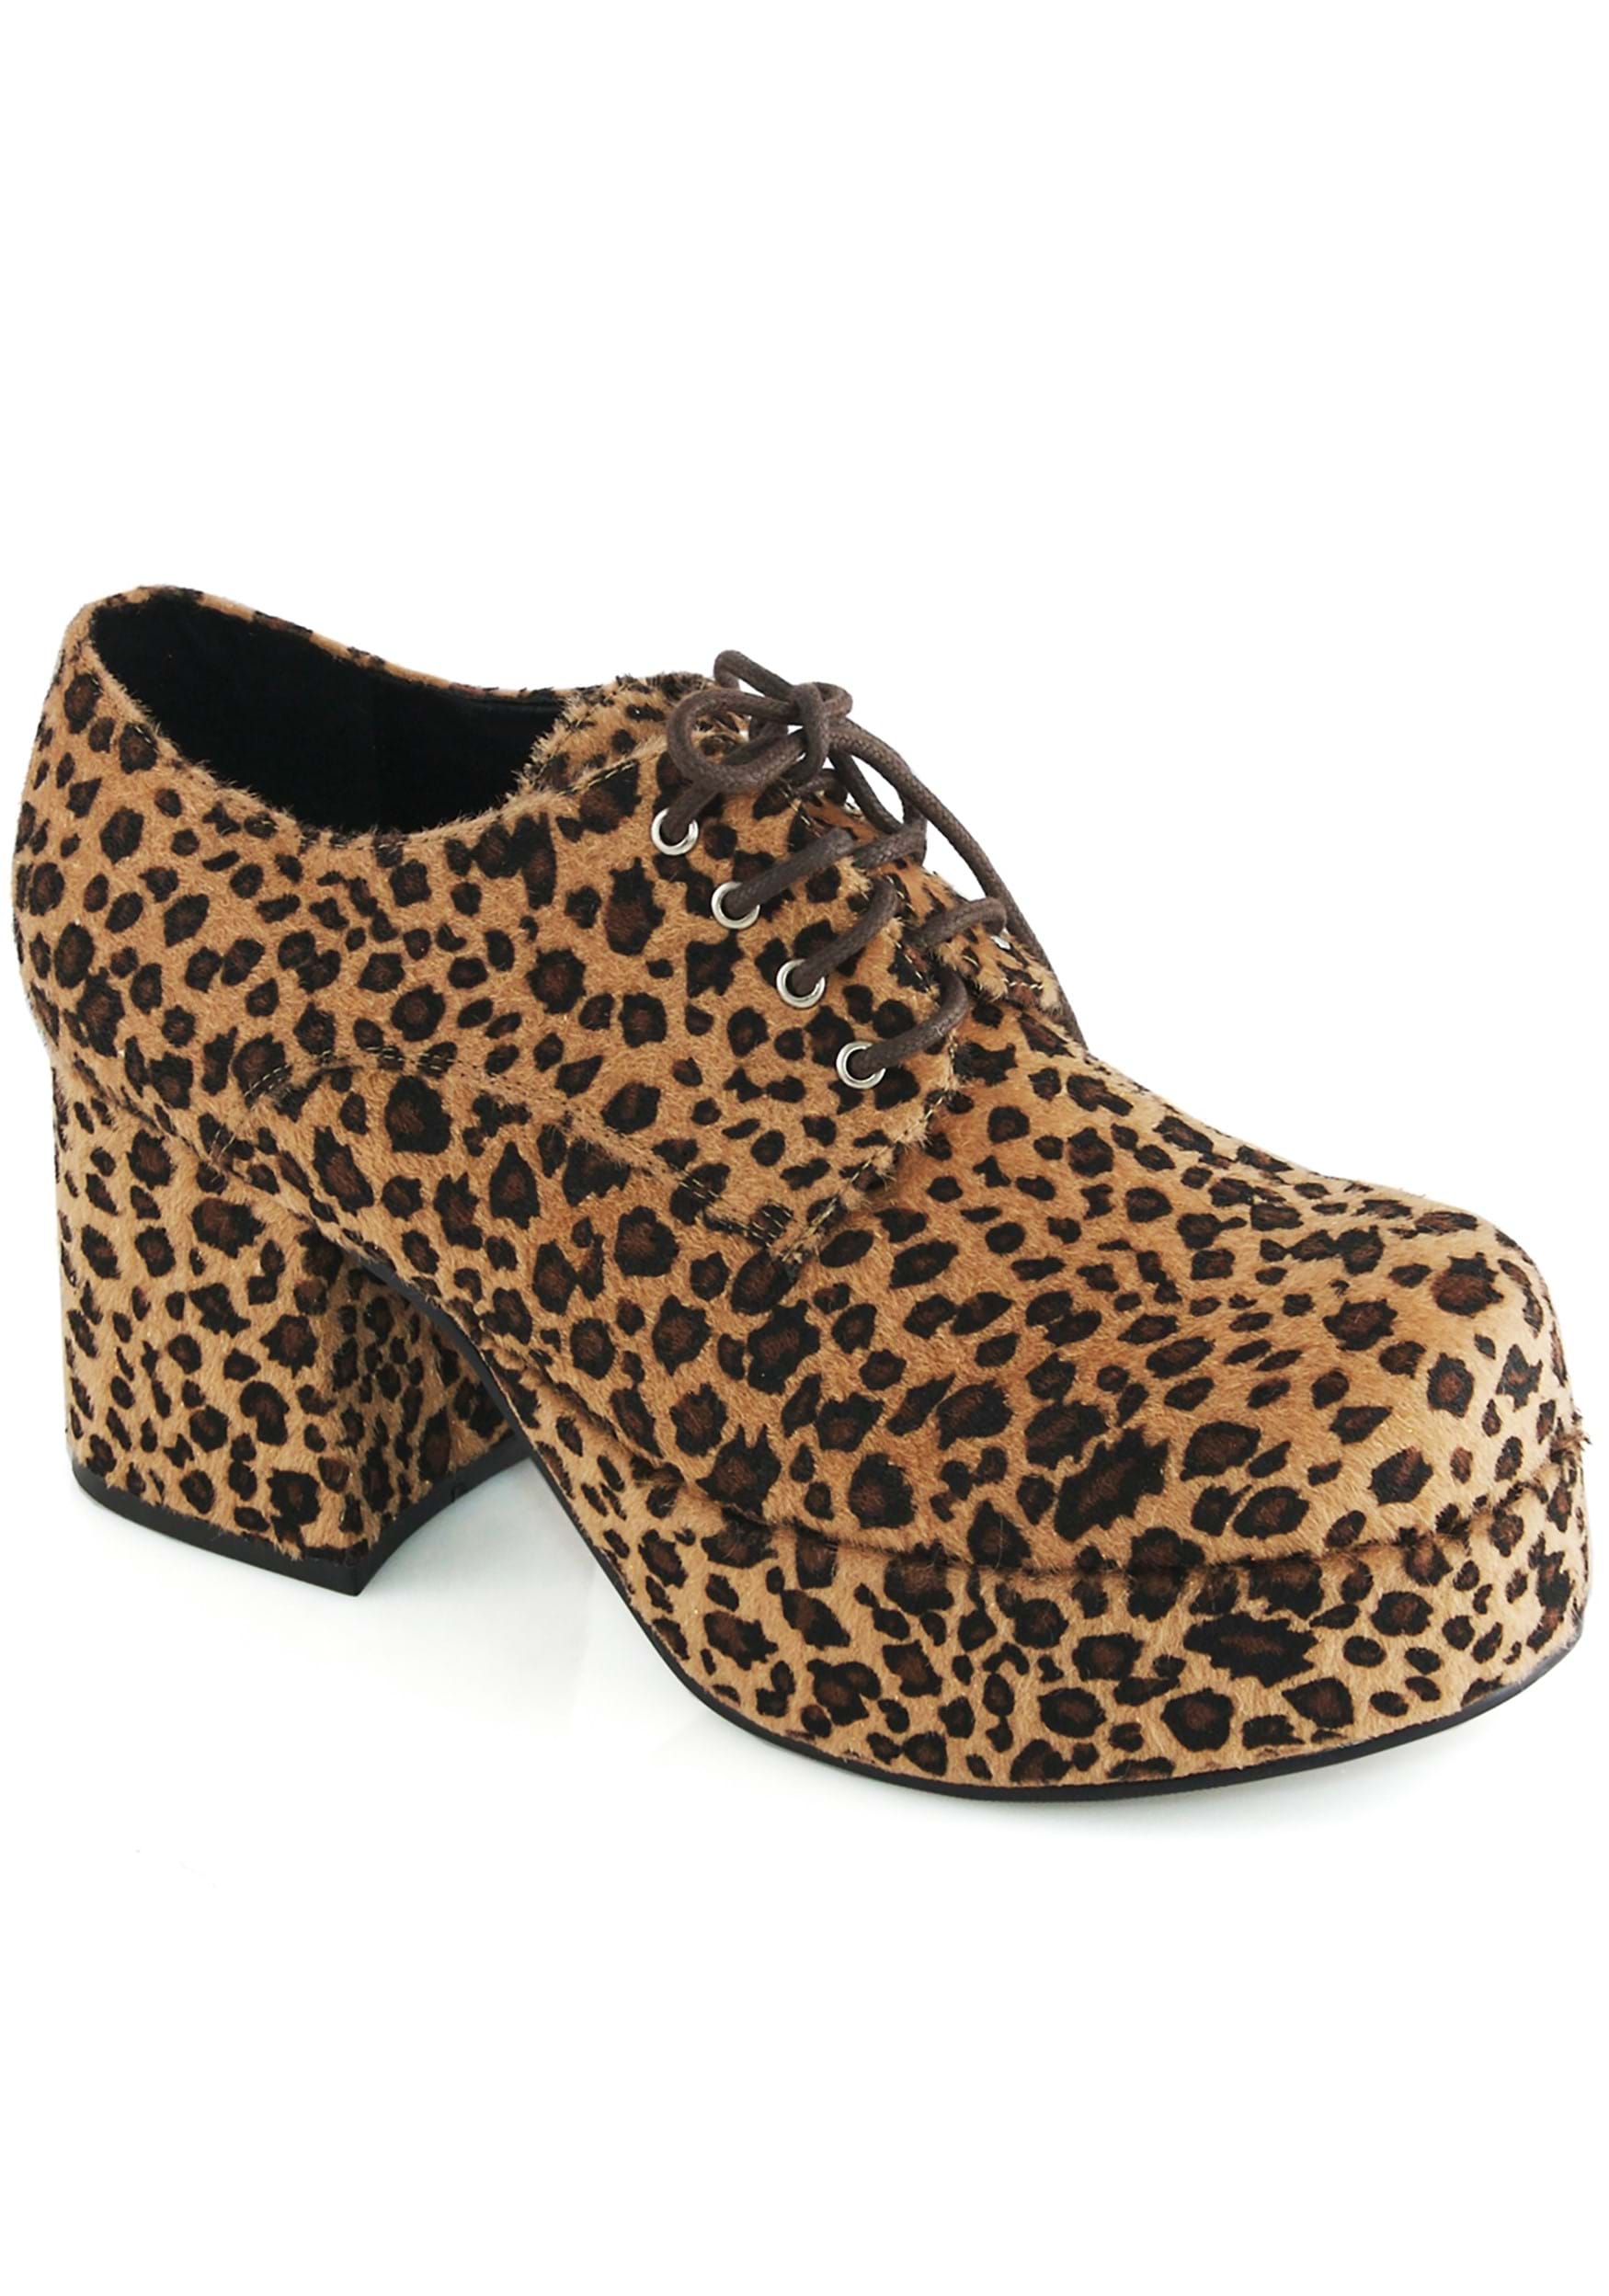 Image of Leopard Platform Men's Pimp Shoes ID EE312PIMPLEO-XS